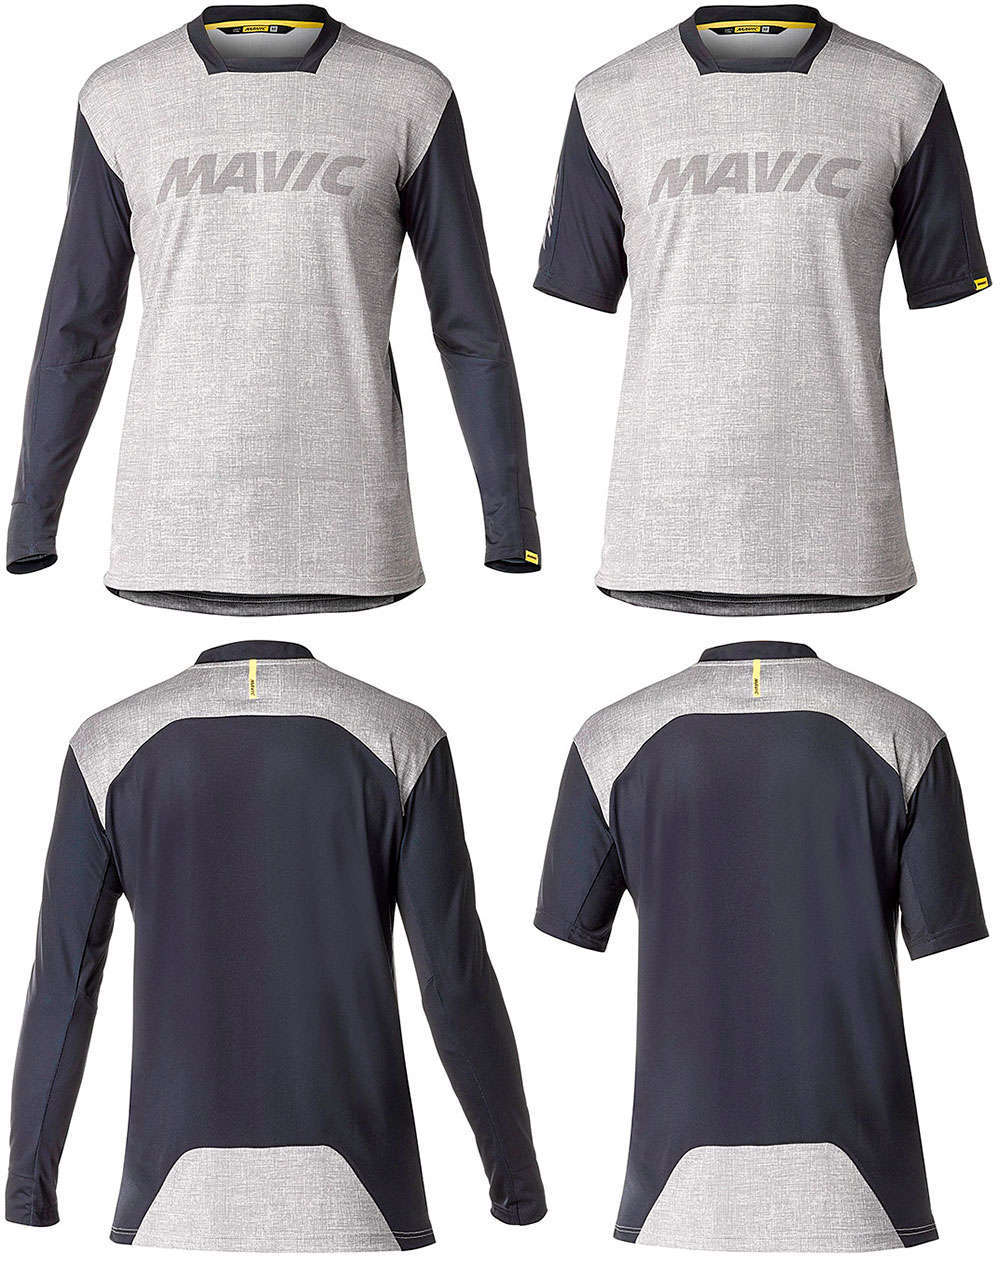 En TodoMountainBike: Mavic actualiza la colección Deemax Pro: dos maillots, un baggy y un culotte interior para amantes del All Mountain